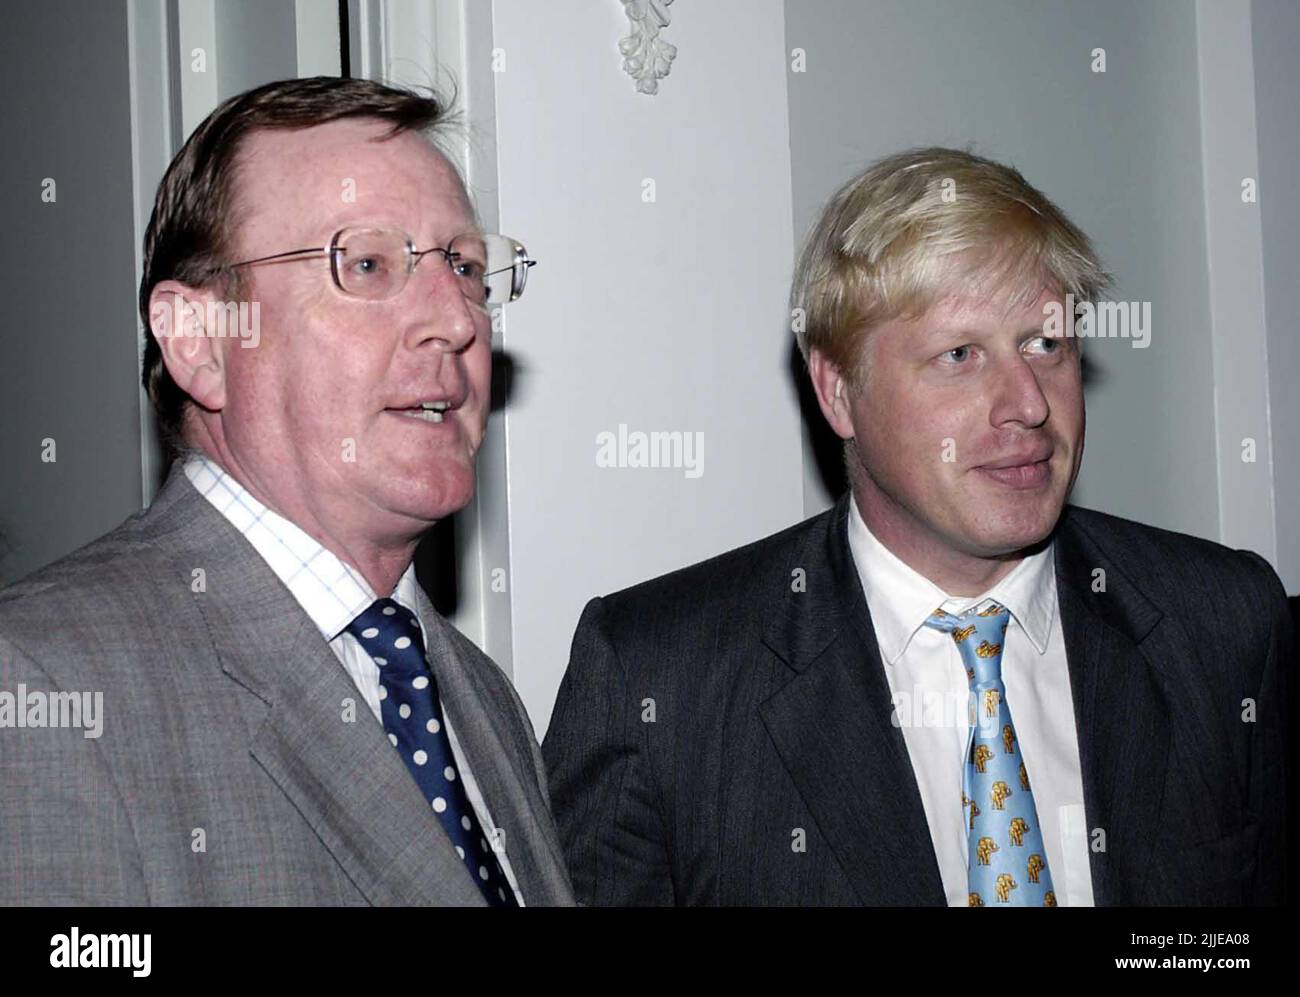 Photo du dossier datée du 24/9/2003, du chef unioniste David Trimble (à gauche) et de Boris Johnson, rédacteur en chef du magazine Spectator lors d'une fête marquant le 175th anniversaire du Spectator, à l'hôtel four Seasons, Park Lane, Londres. L'ancien premier ministre d'Irlande du Nord est décédé, a annoncé le Parti unioniste d'Ulster. Date de publication : lundi 25 juillet 2022. Banque D'Images